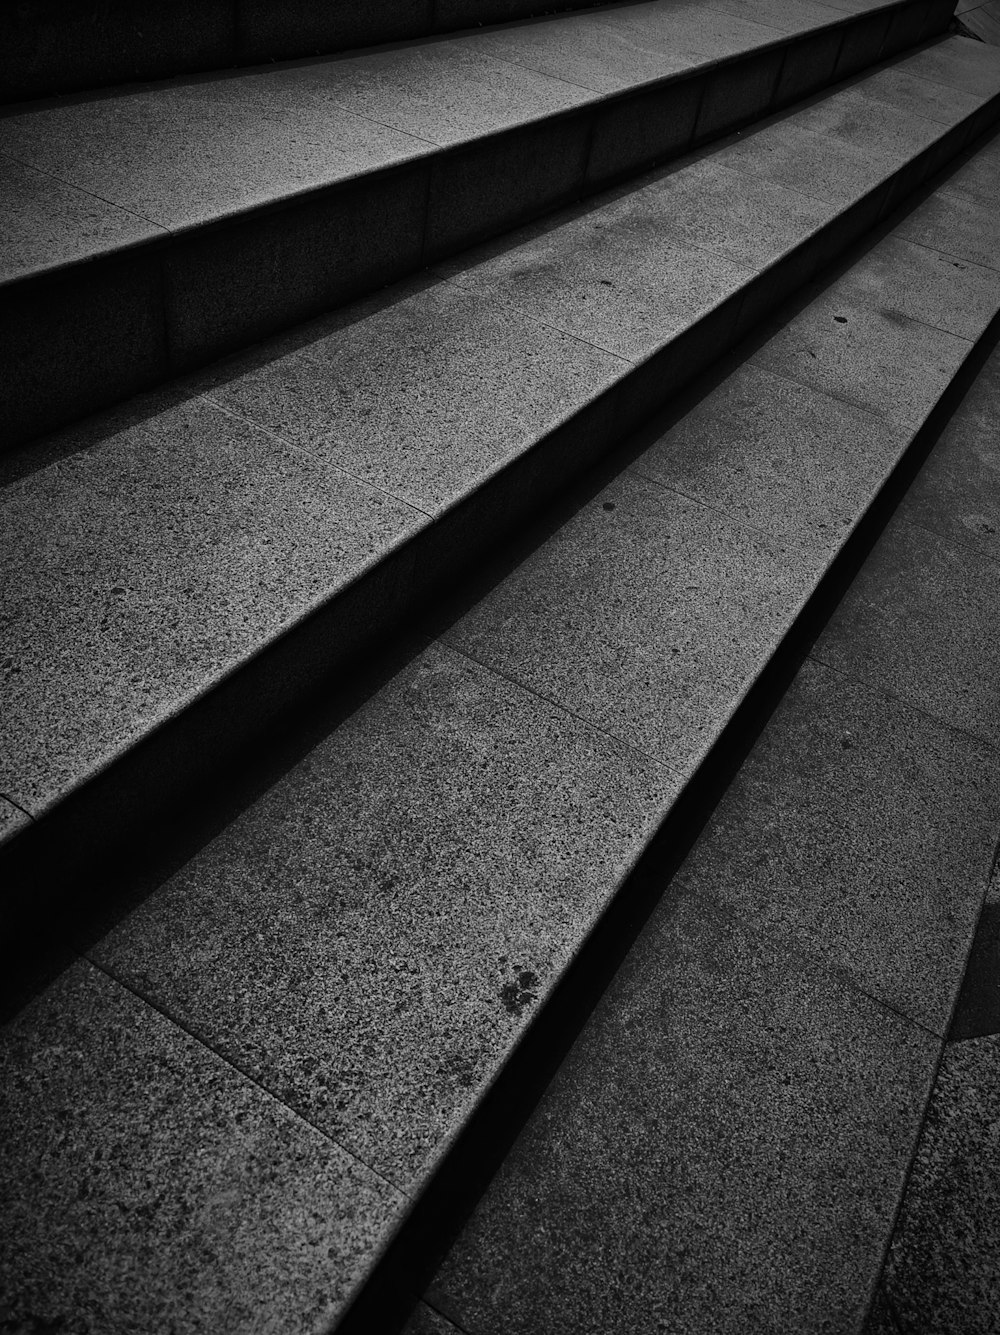 Une photo en noir et blanc de marches en béton